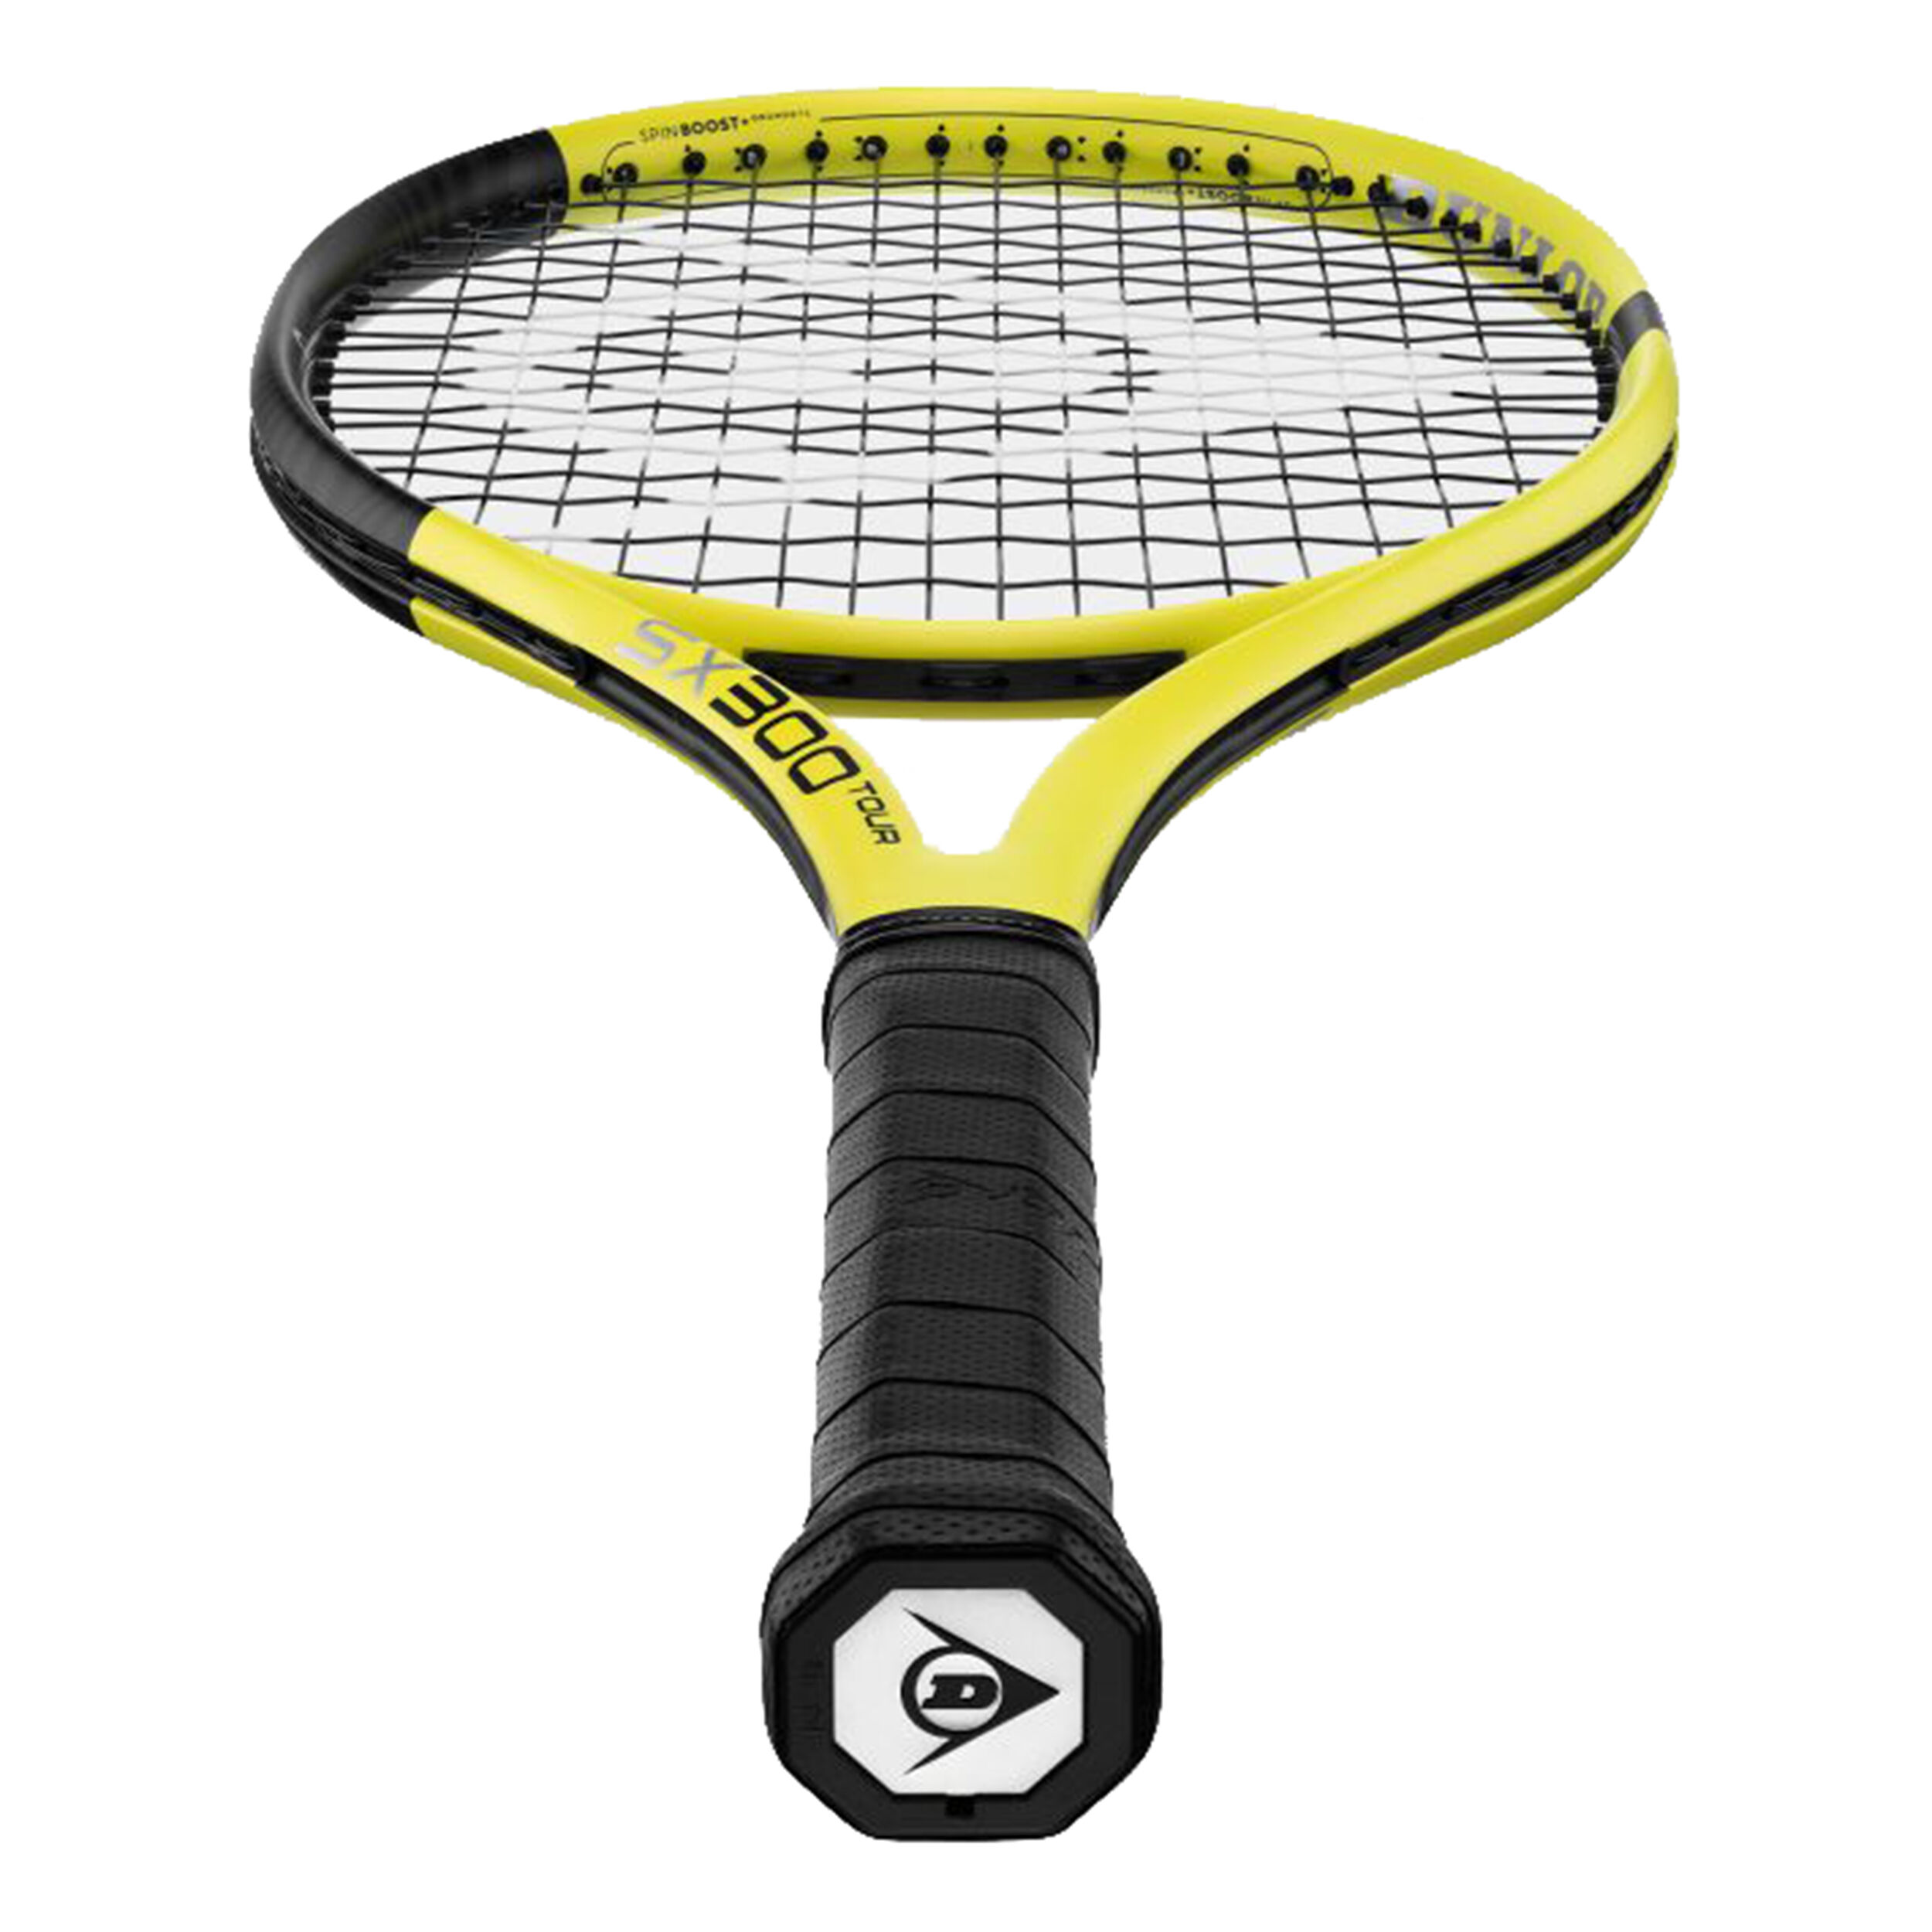 Dunlop SX 300 Tour Testschläger online kaufen Tennis-Point